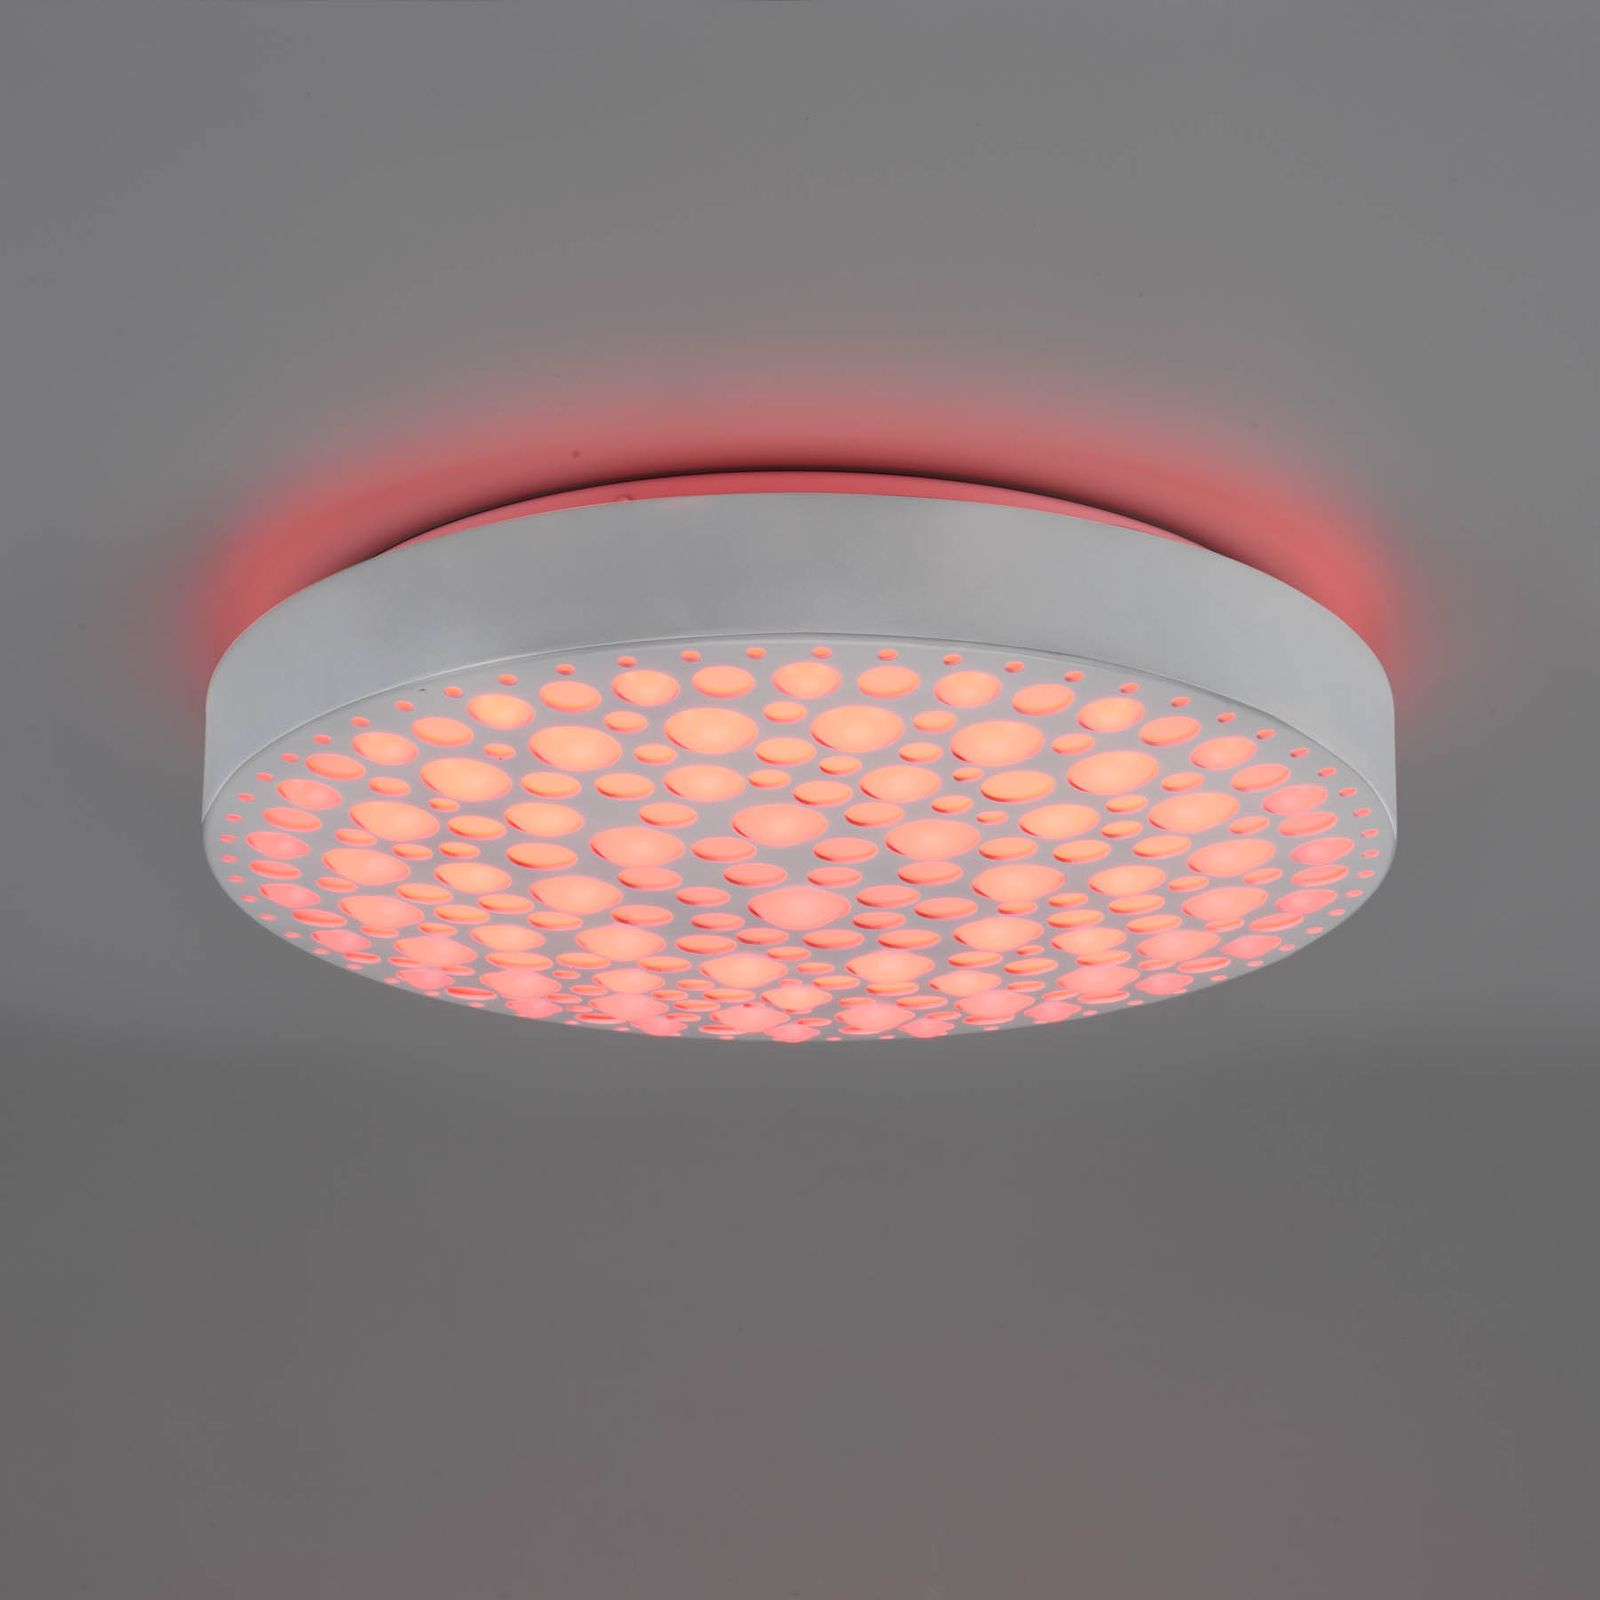 LED lubinis šviestuvas "Chizu" Ø 40,5 cm, reguliuojamas RGB, baltas